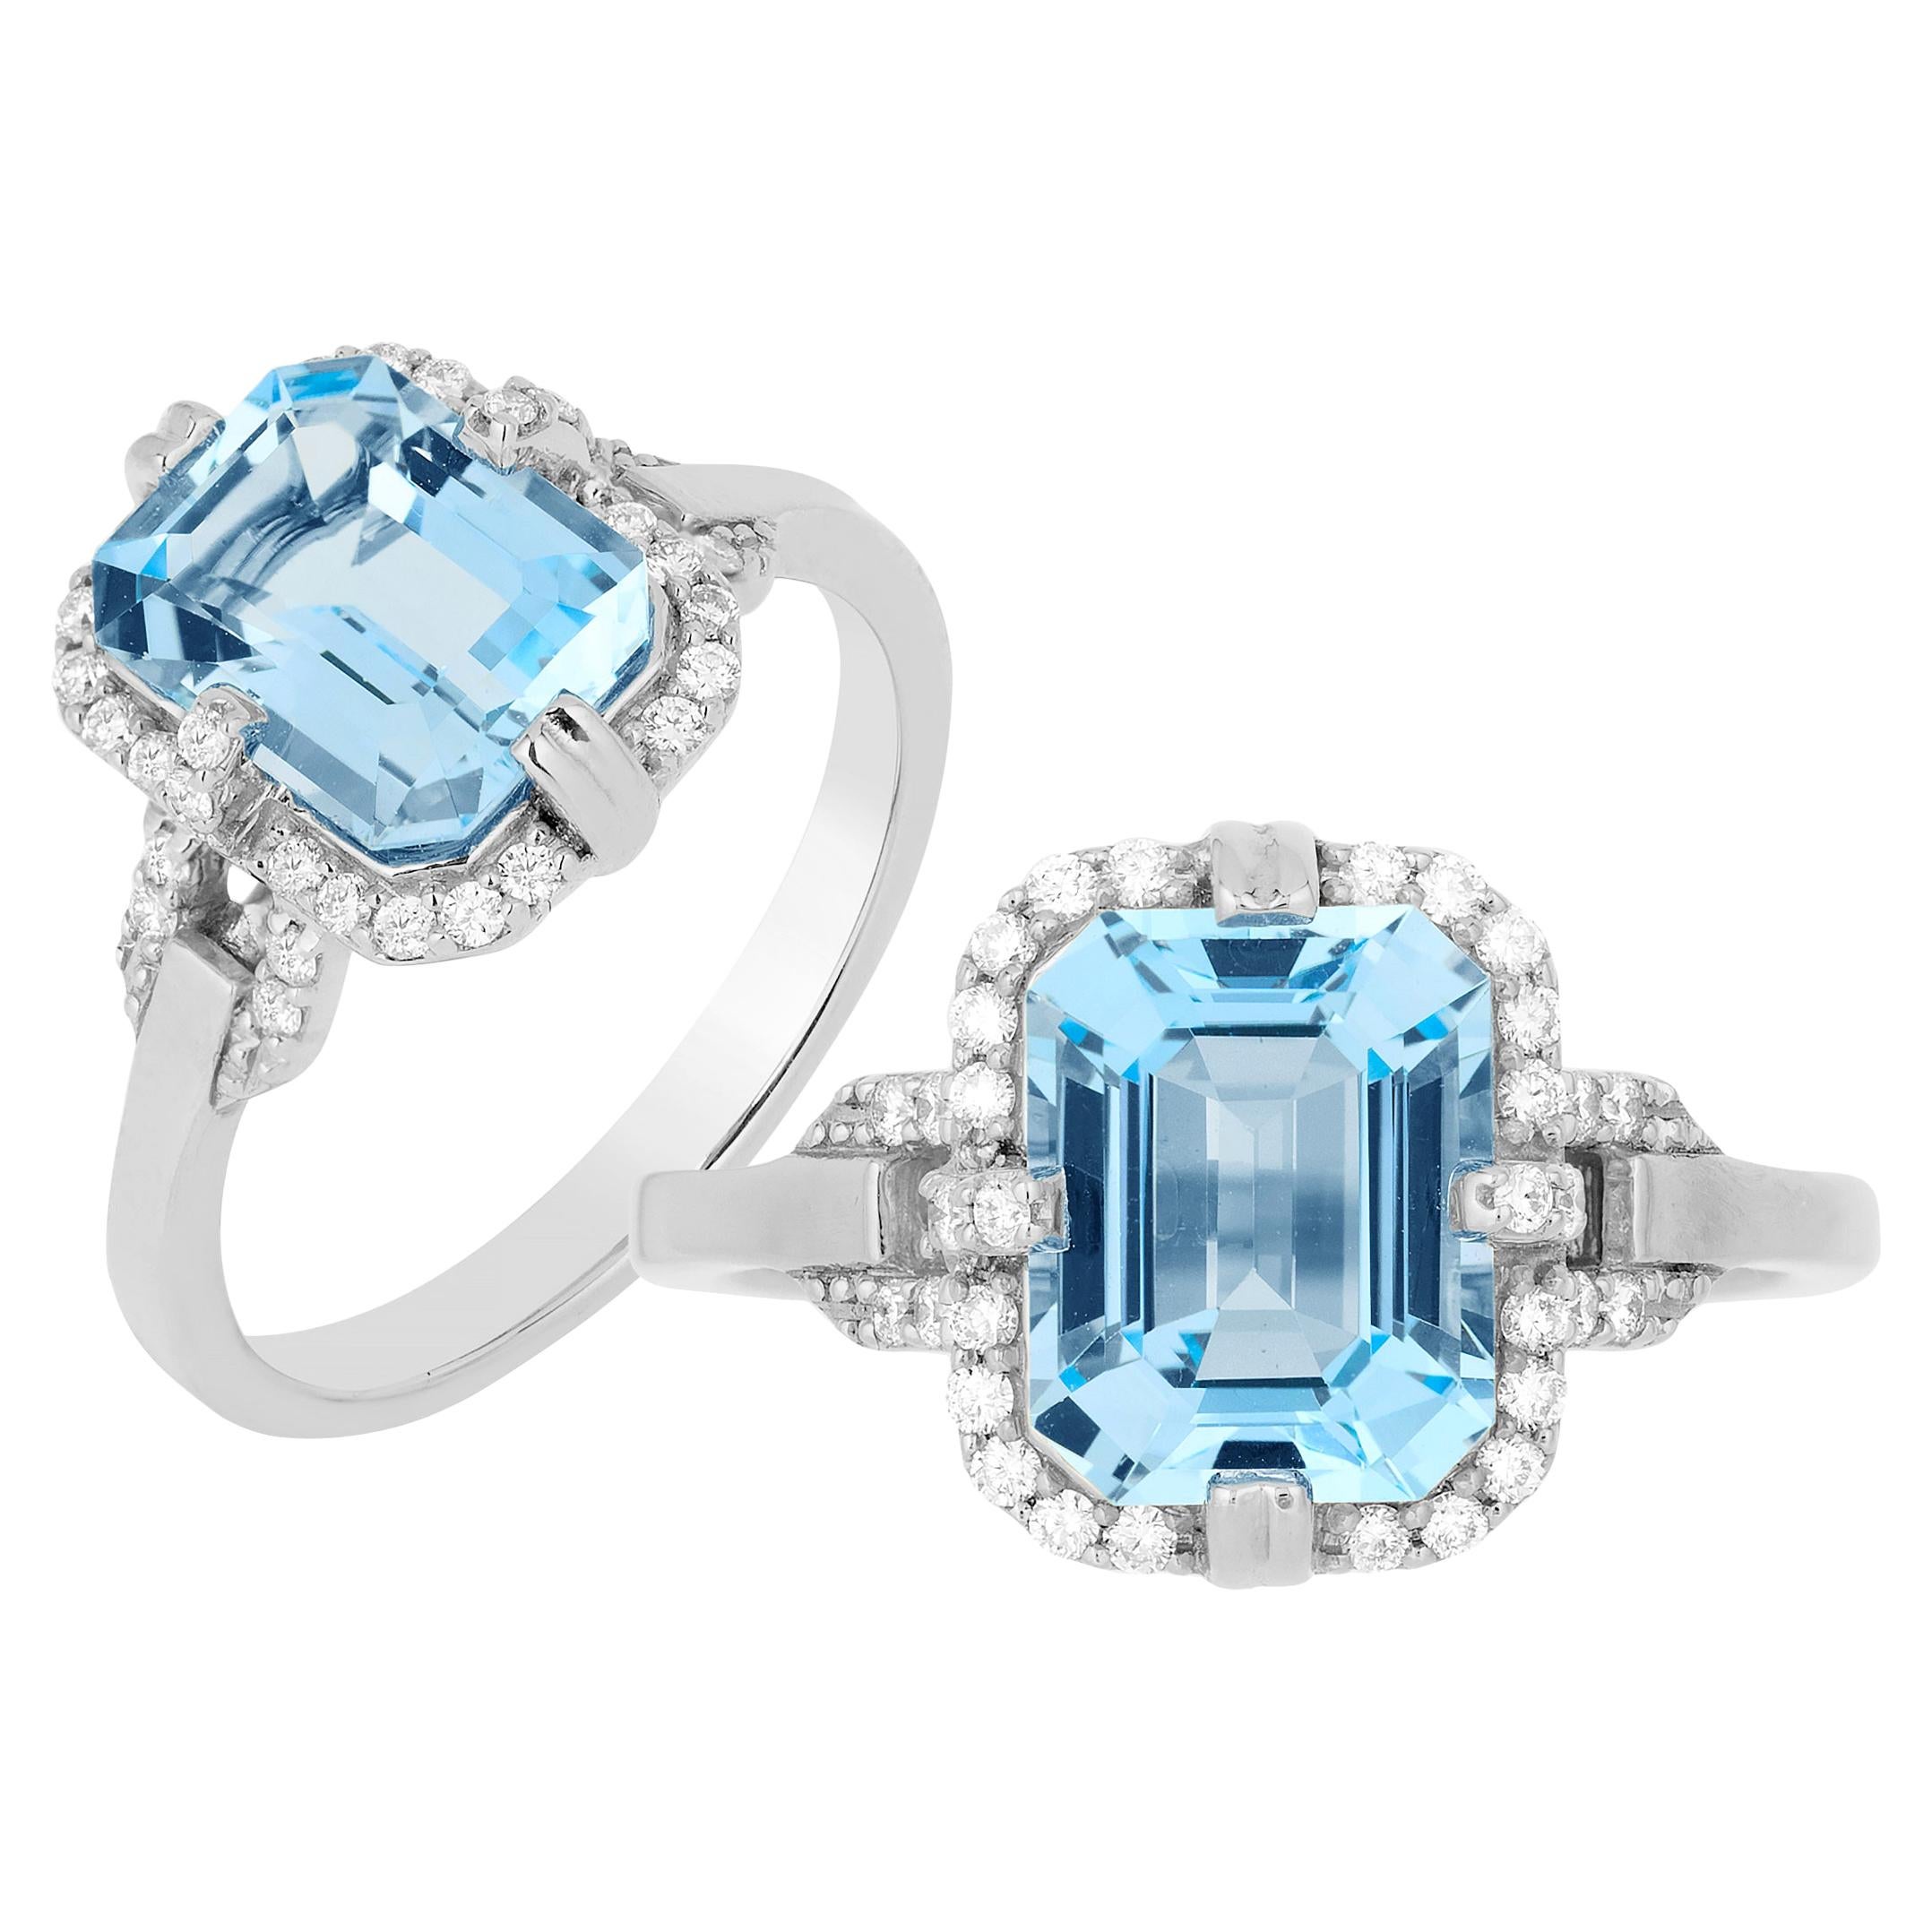 A blue topaz and diamond 